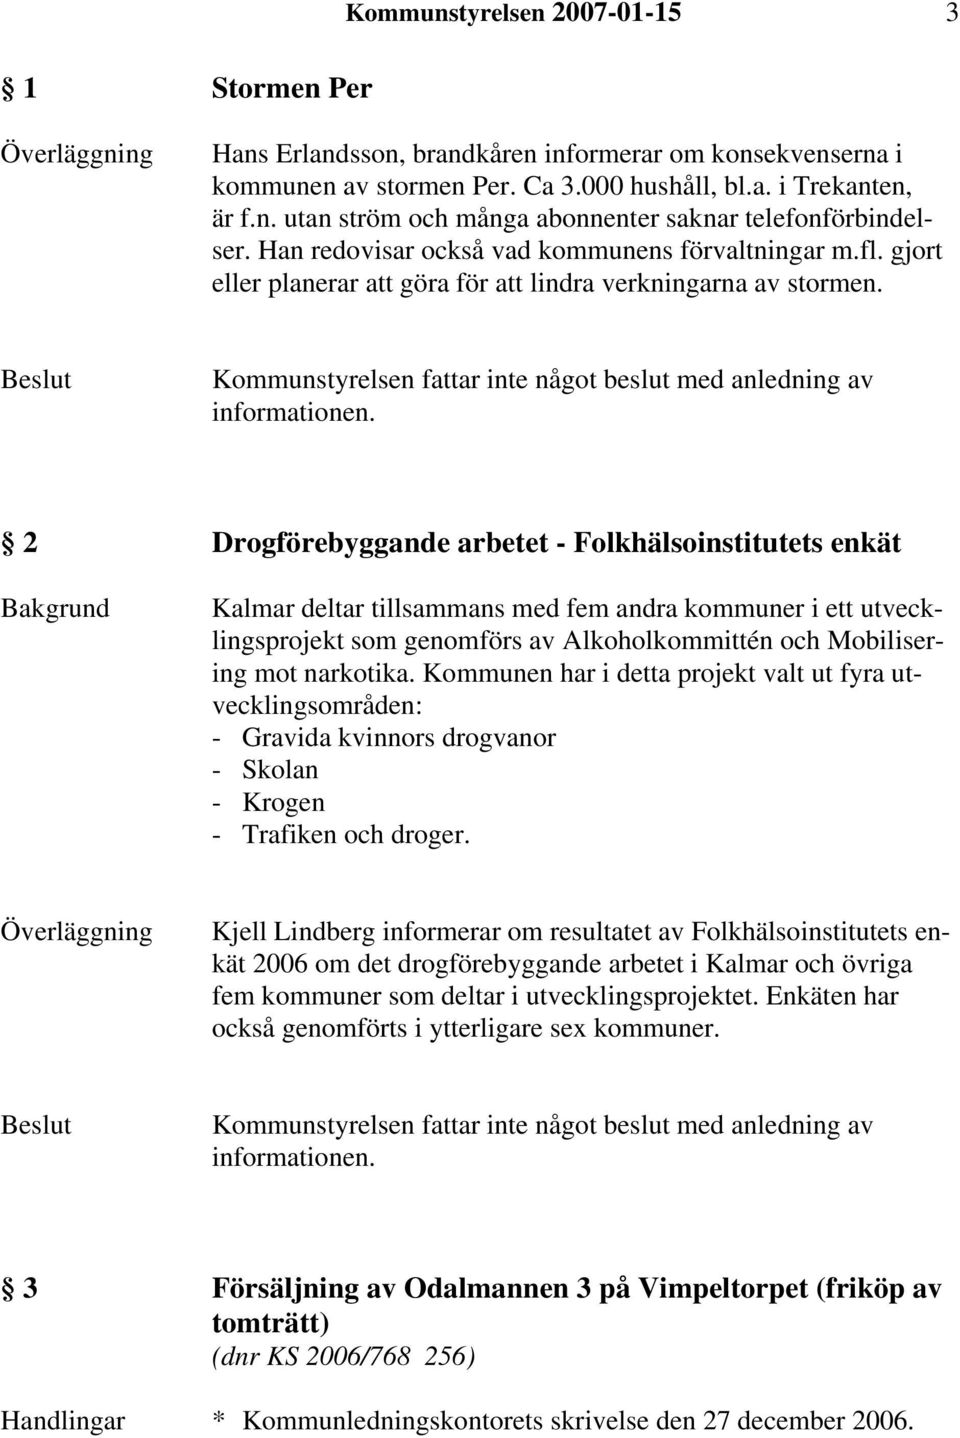 2 Drogförebyggande arbetet - Folkhälsoinstitutets enkät Kalmar deltar tillsammans med fem andra kommuner i ett utvecklingsprojekt som genomförs av Alkoholkommittén och Mobilisering mot narkotika.